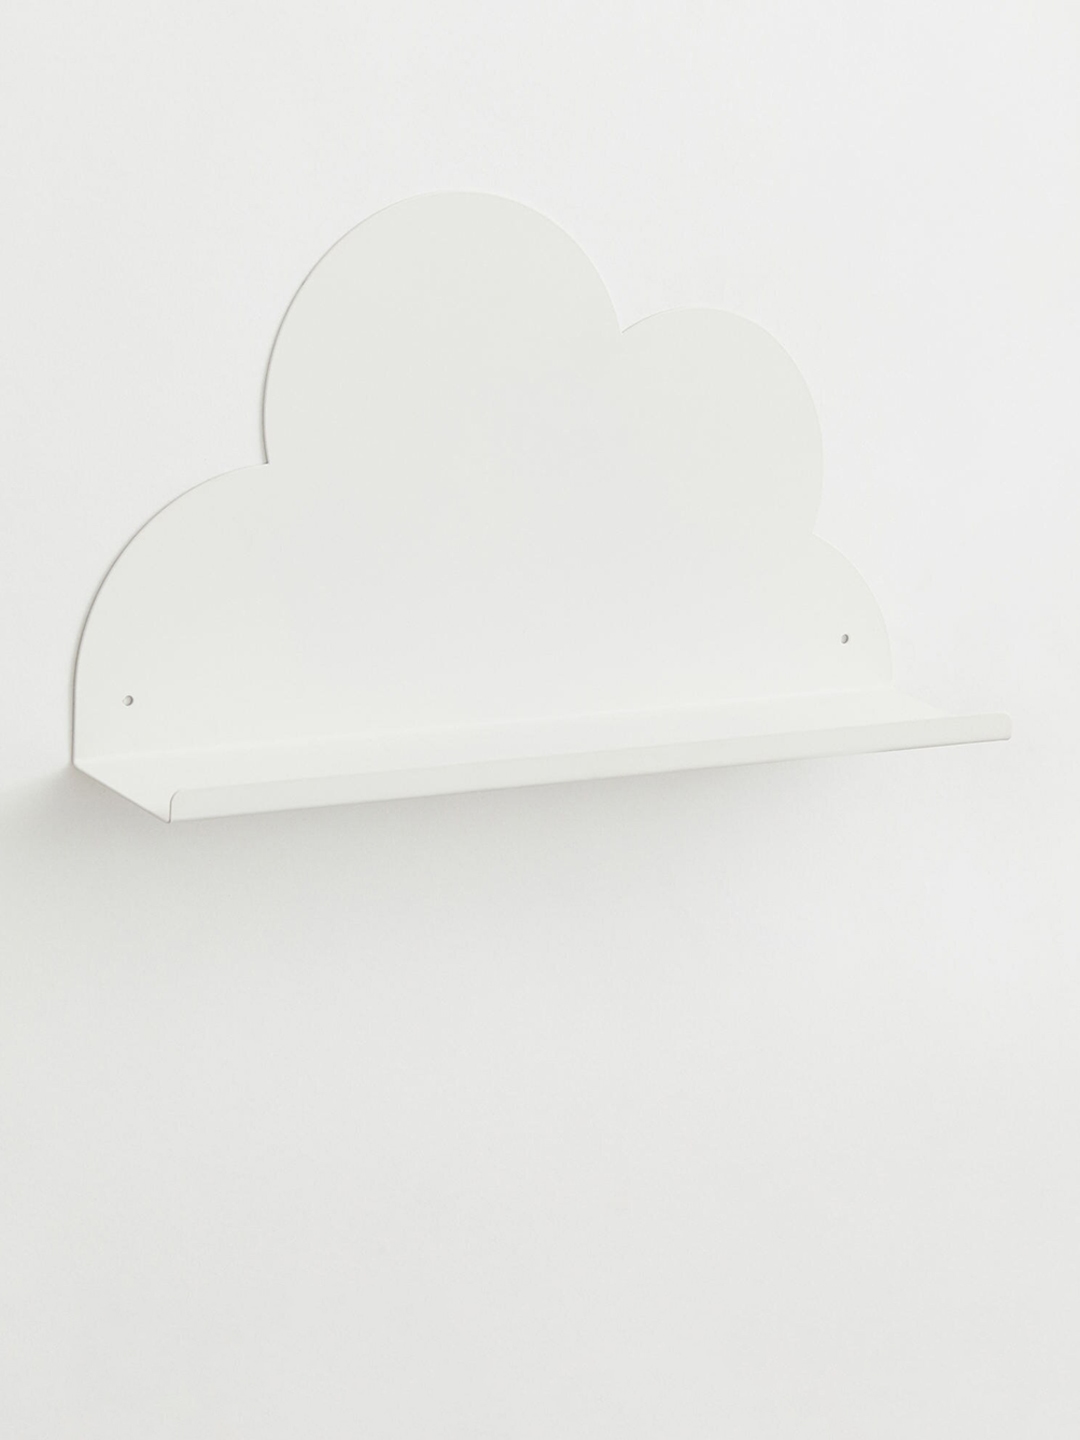 H&M Girls White Cloud-Shaped Wall Shelf